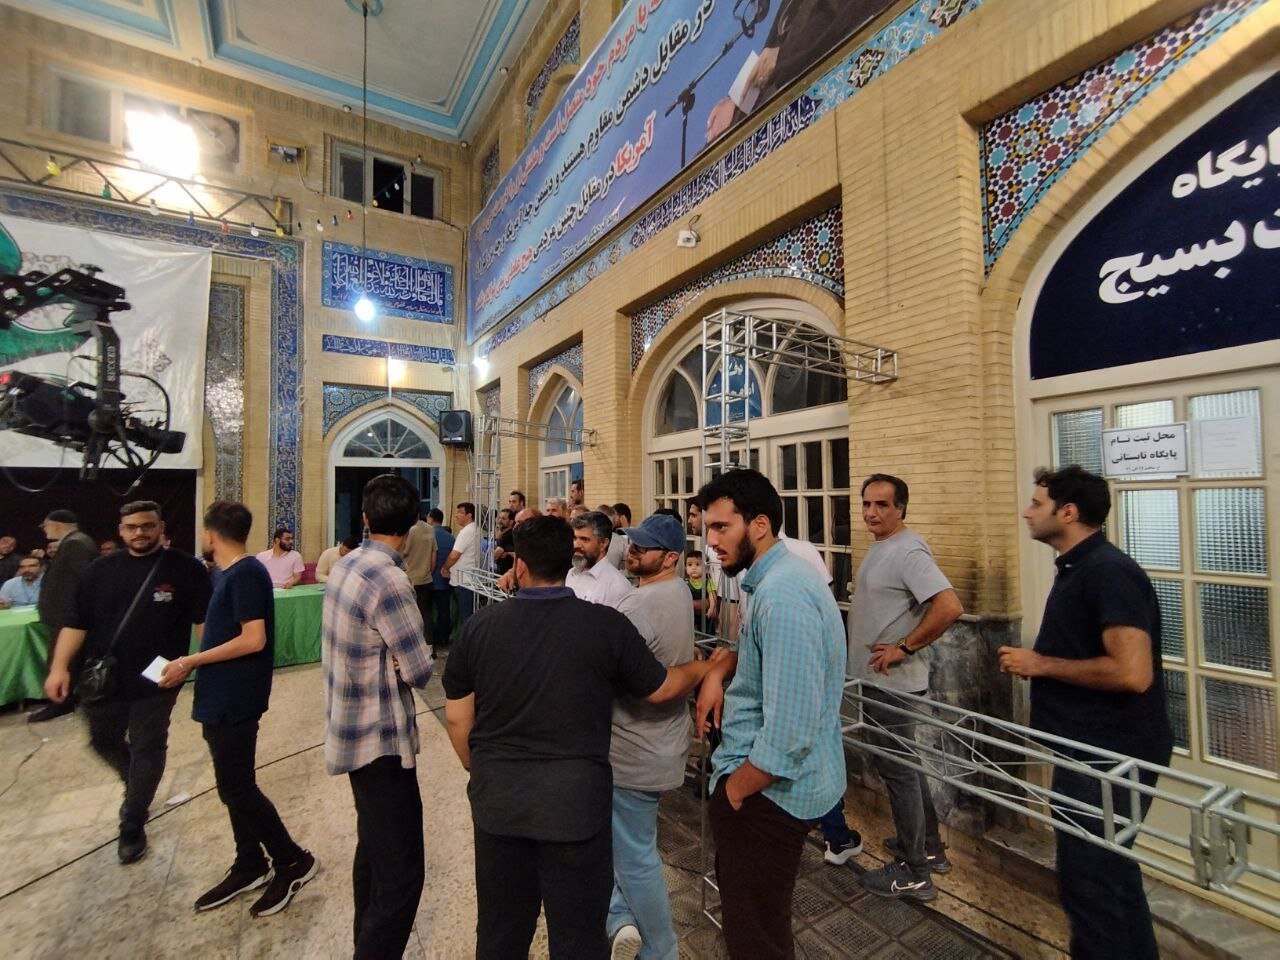 مسجد لرزاده همچنان شاهد جمعیت بالای رای دهندگان است.